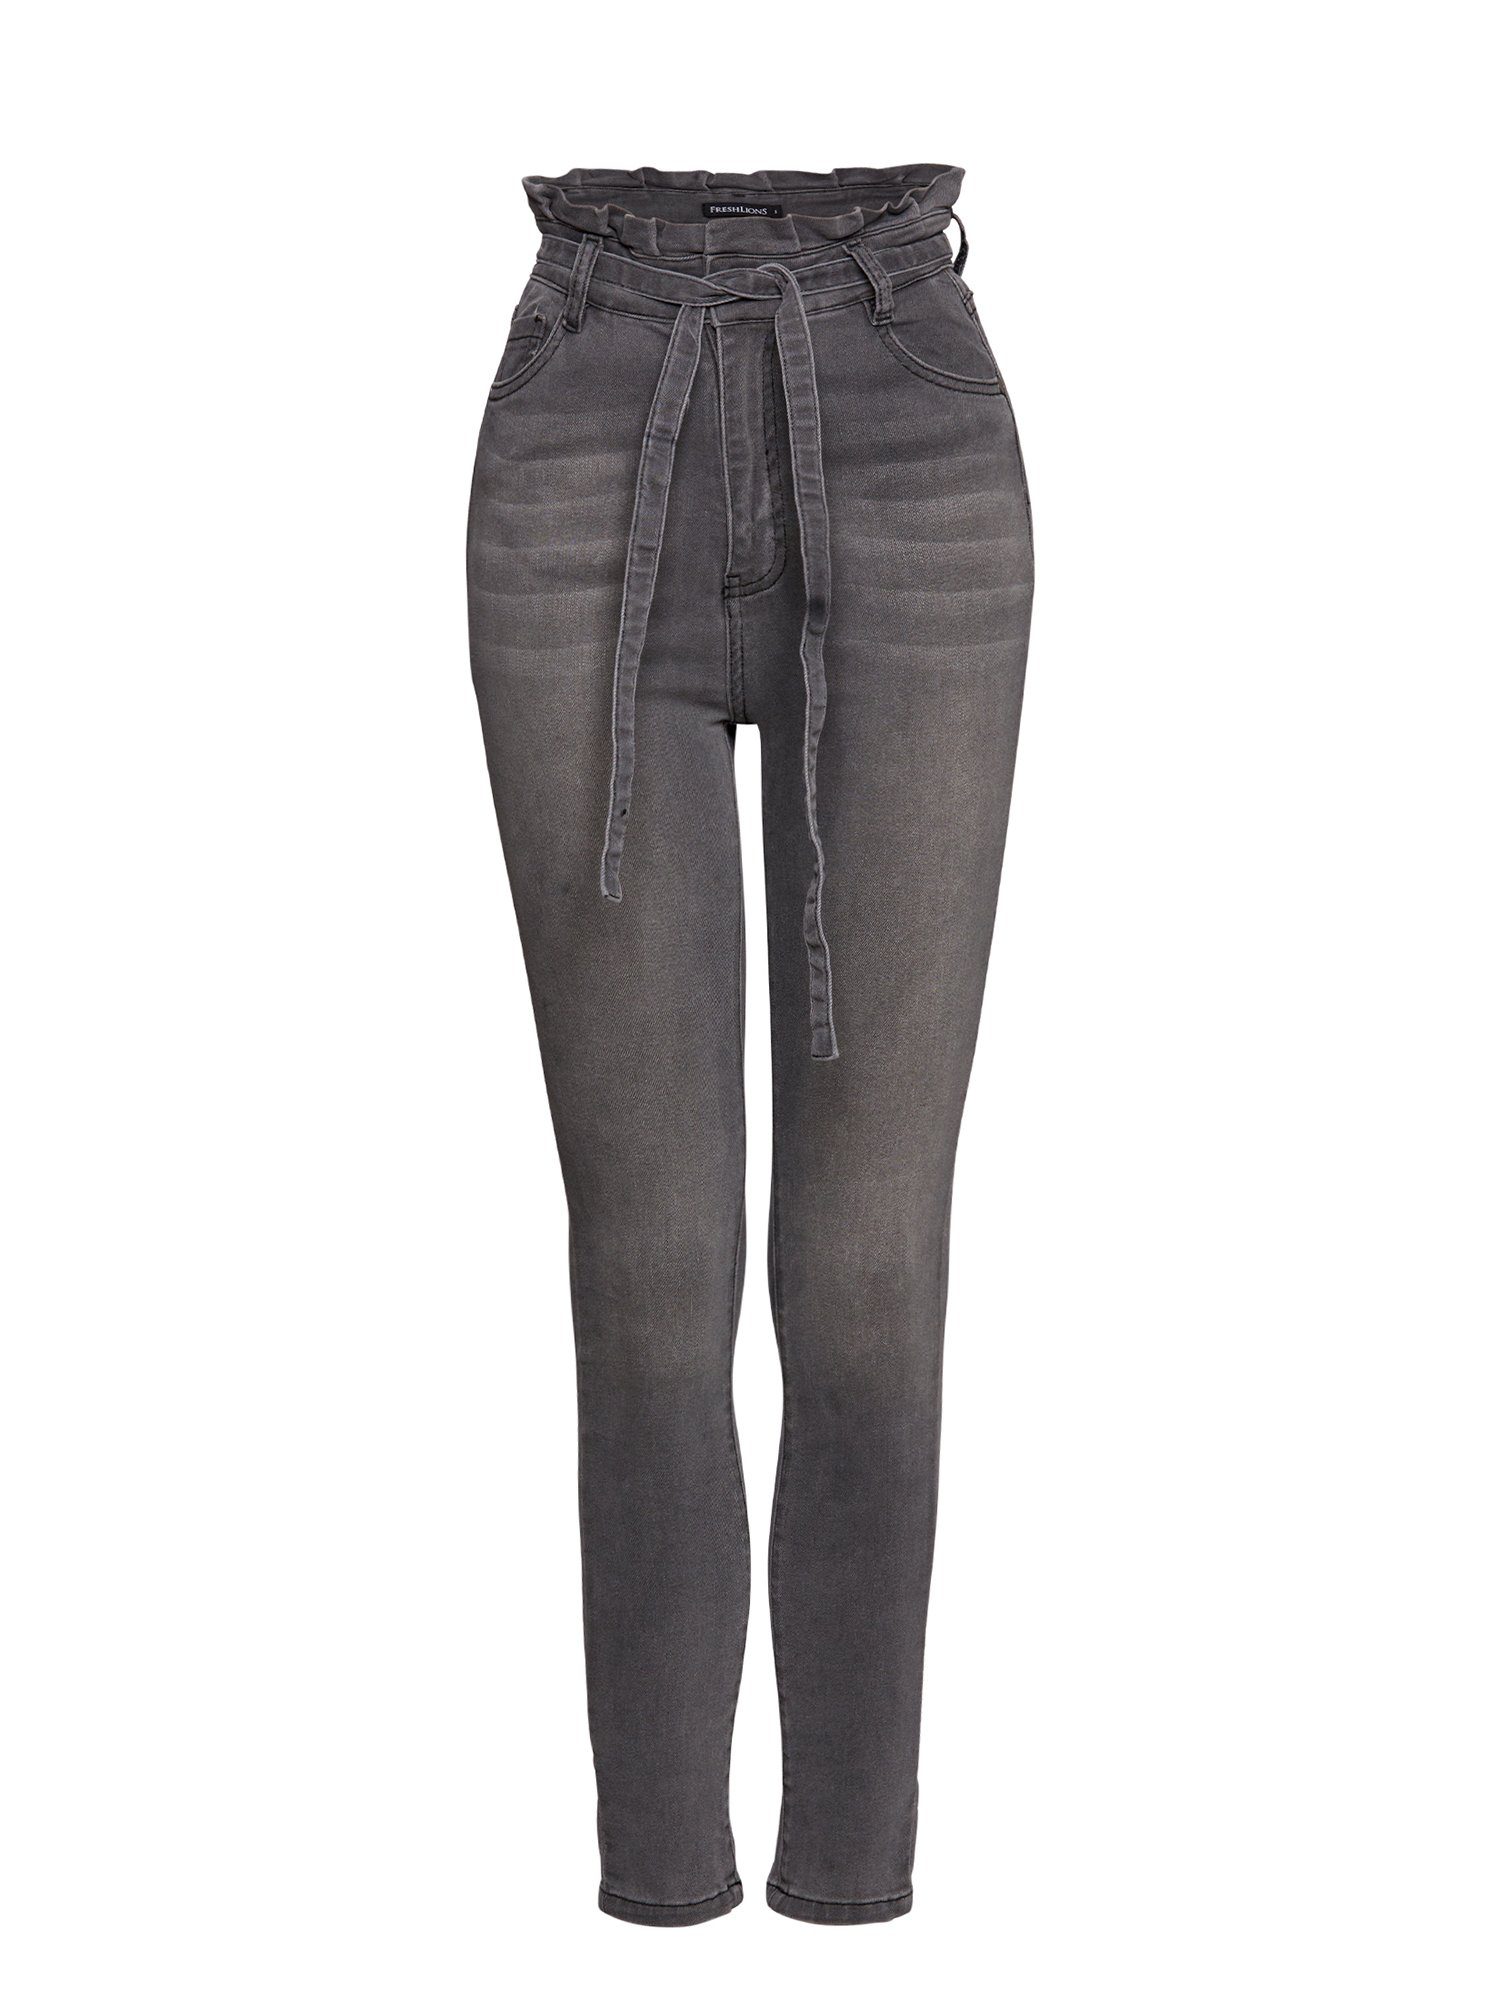 grau High-waist-Jeans Bindegurt Jeans mit Freshlions